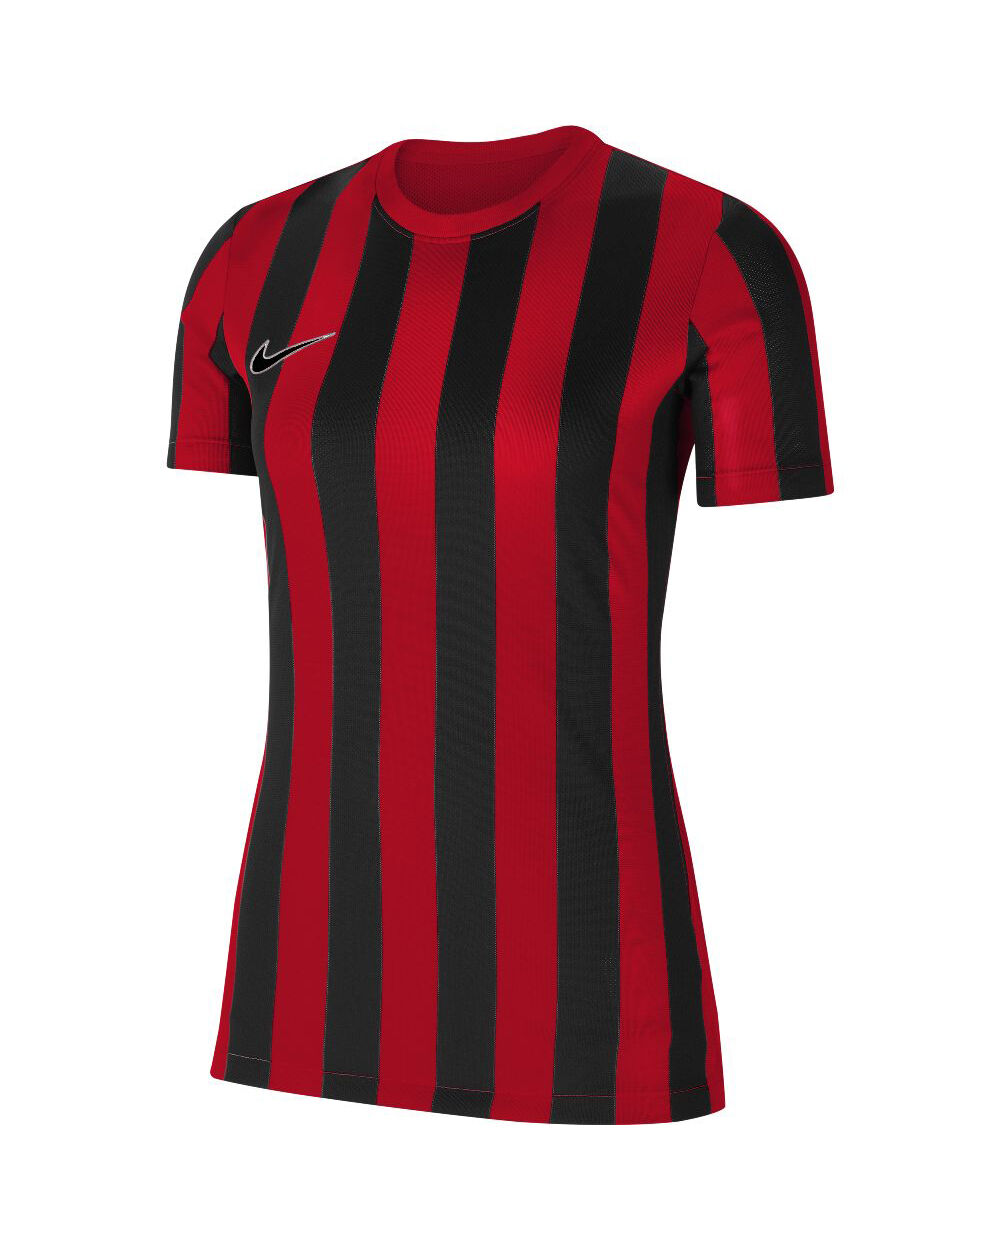 Nike Maglia Striped Division IV Rosso e Nero per Donne CW3816-658 L